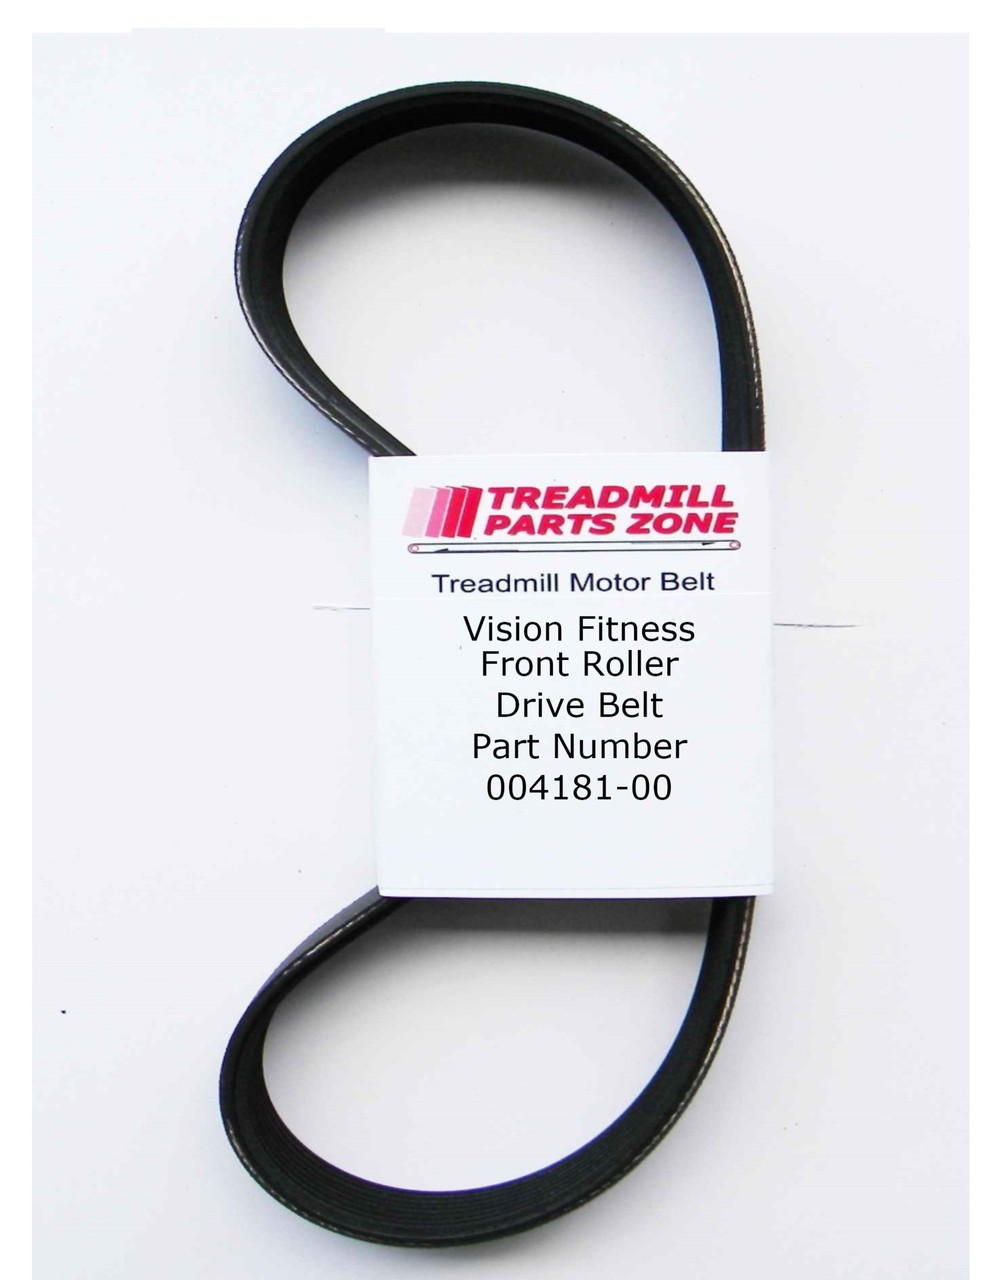 Vision Treadmill Model TM181 T9500 Front Roller Drive Belt Part Number 004181-00